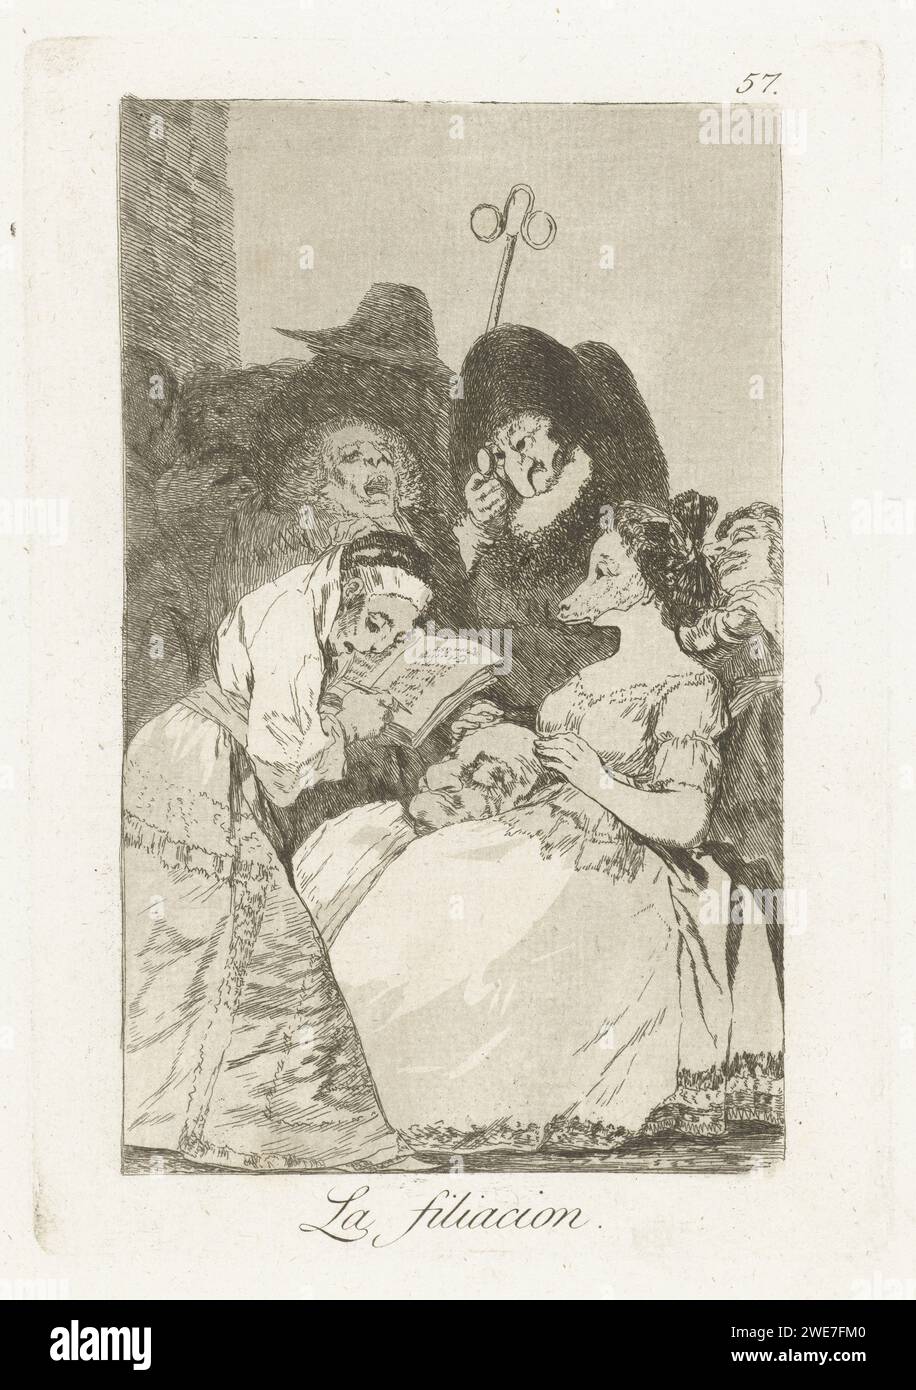 Aus Aphstamming, Francisco de Goya, 1797–1799 drucken Eine Frau mit einer Maske vorne, ihre Hände bedecken die Hörner auf dem Kopf auf ihrem Schoß. Ihr gegenüber schreibt eine Frau in einem Buch. 57. Druck in der Los Caprichos-Serie. Spanien Papier ätzt Jugendliche, junge Frau, Mädchen. Maske. (Zivile) Trauungen Stockfoto